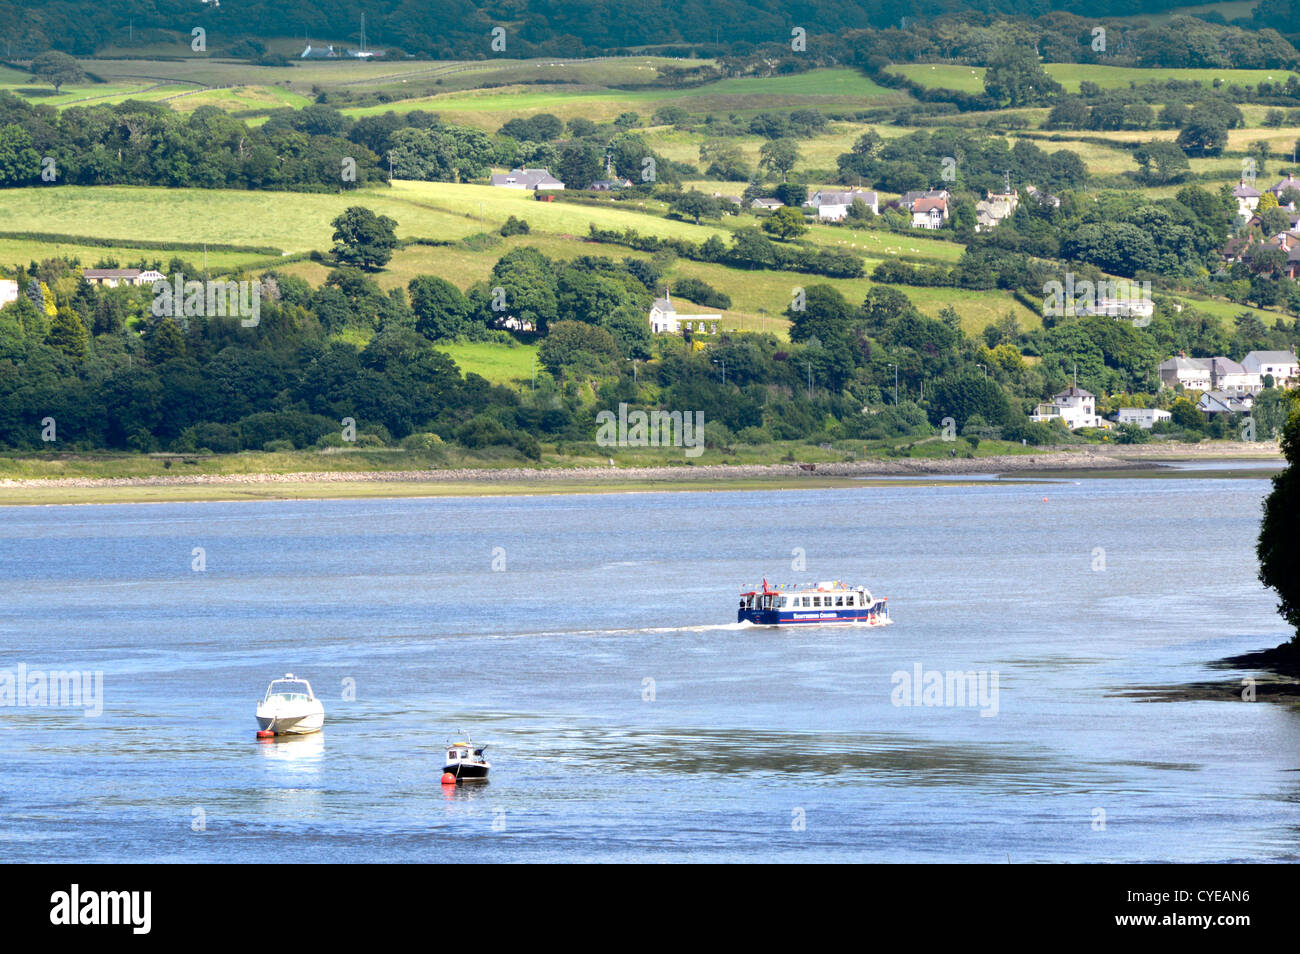 Nach der Abfahrt geht das Boot auf den Conwy Valley Conwy Quayside hügelige Landschaft über Clwyd North Wales Großbritannien Stockfoto